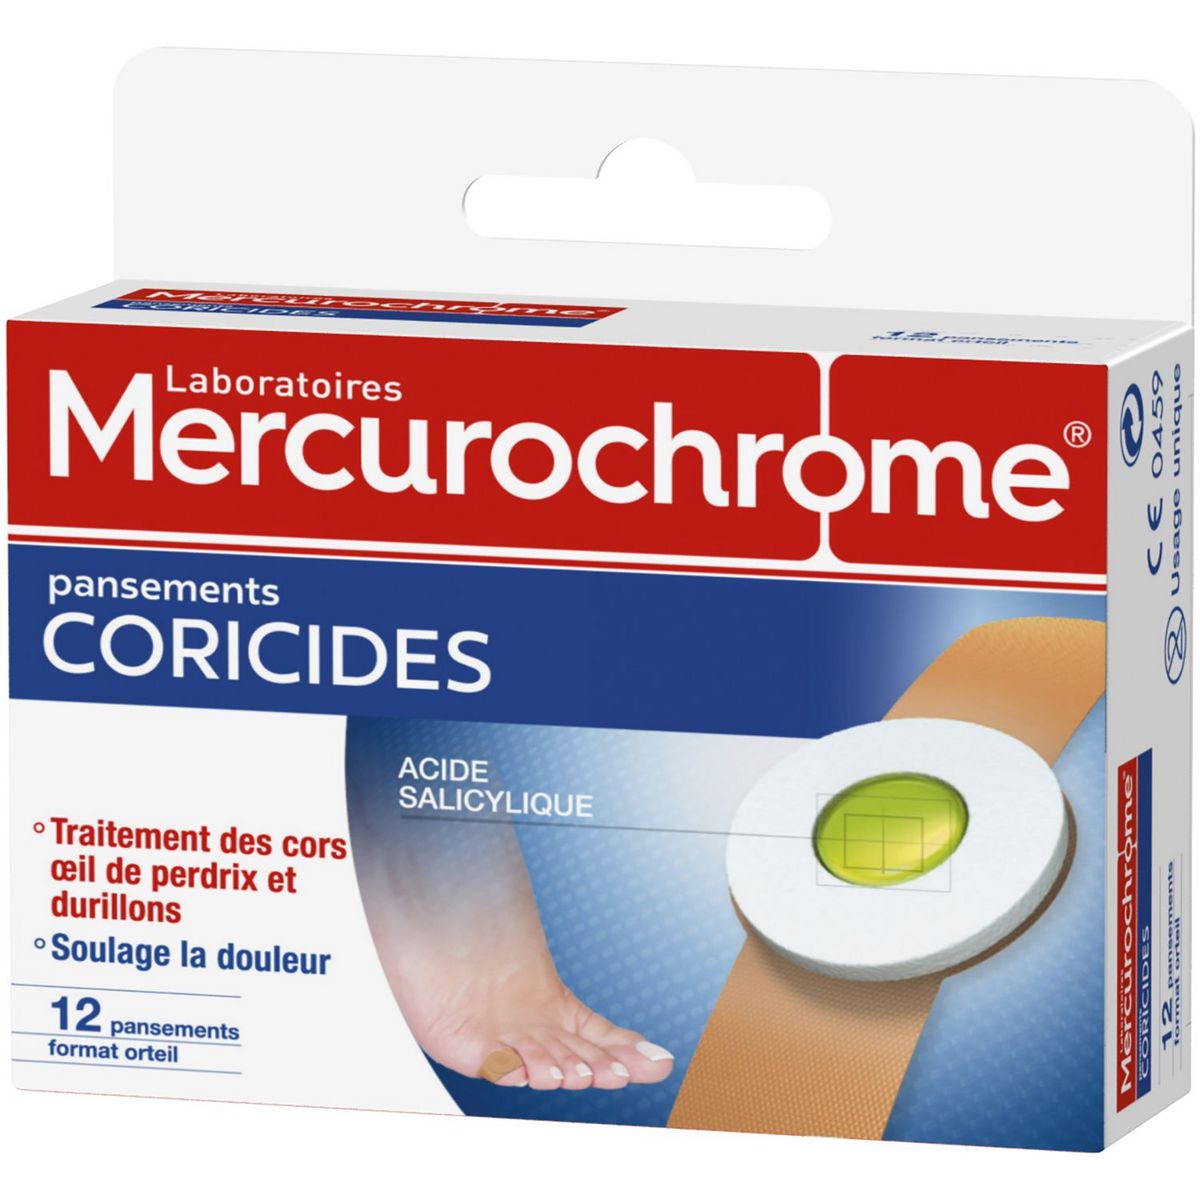 MERCUROCHROME Pansements coricides acide salicylique 12 pansements